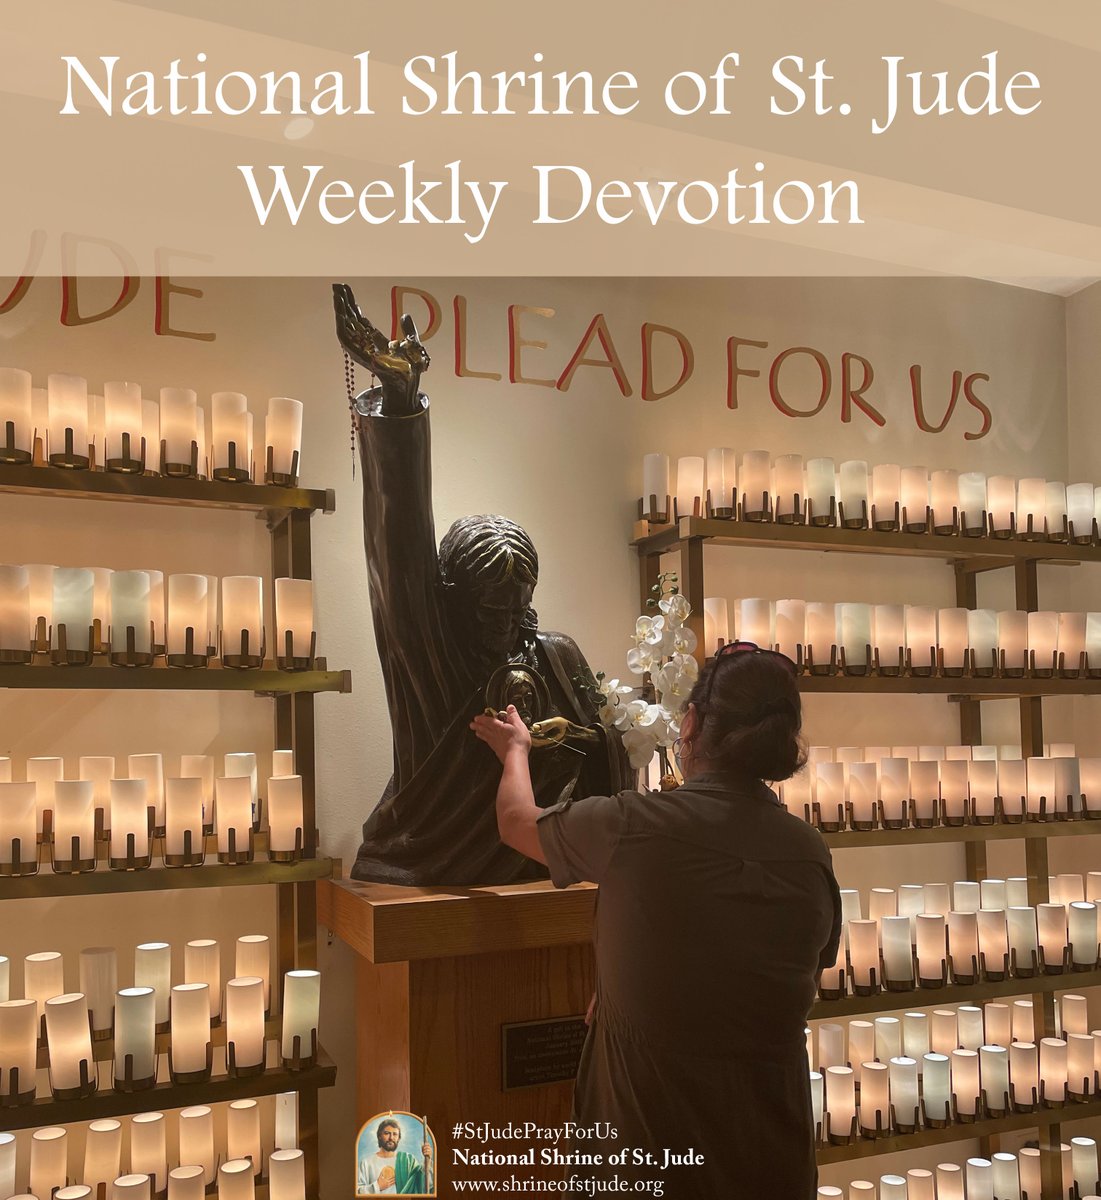 National Shrine of St. Jude Weekly Devotion - May 20th: bit.ly/devotion5-20-24

-

#pray #prayer #stjude #saintjude #stjudethaddeus #catholic #MotivationMonday